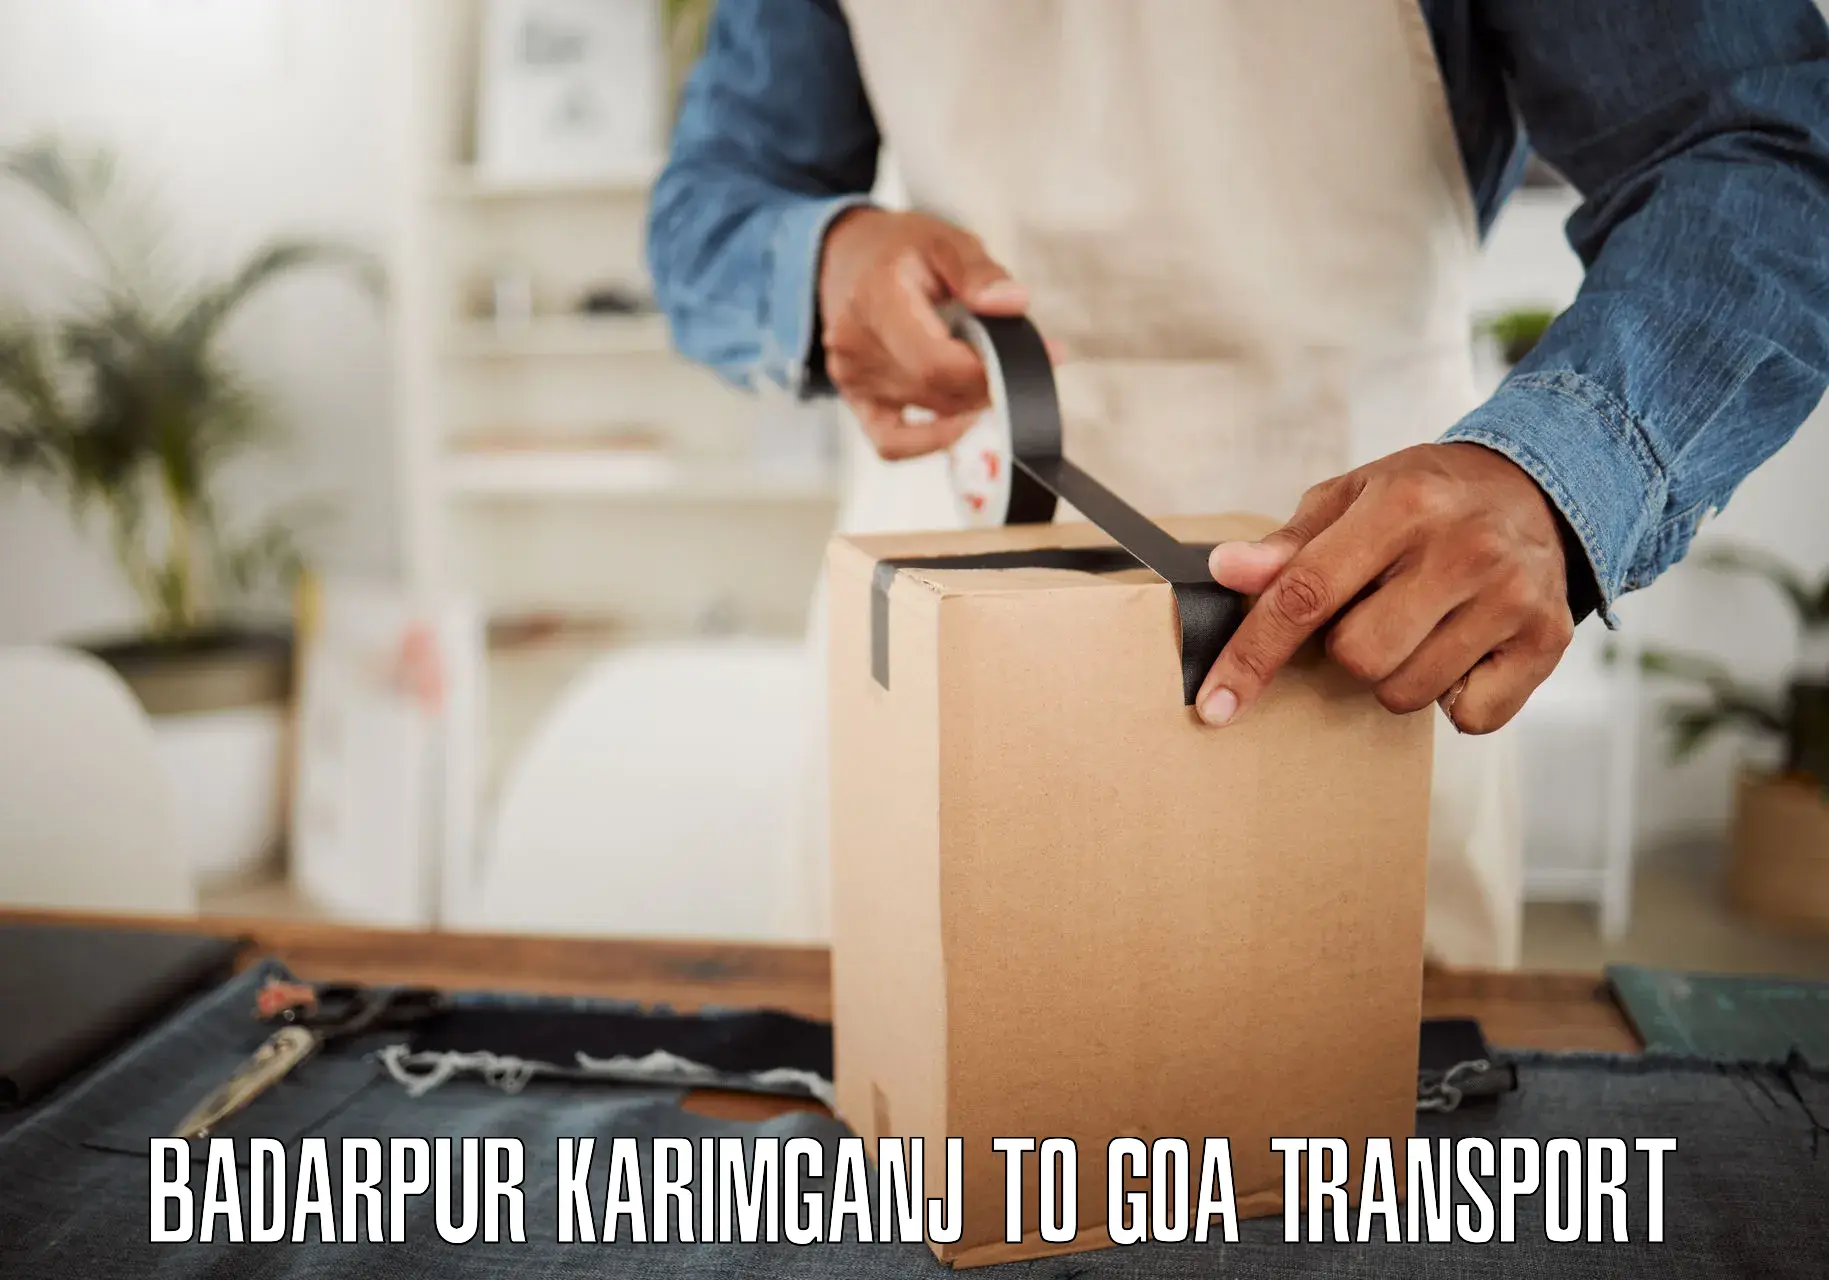 Transport in sharing Badarpur Karimganj to Bardez